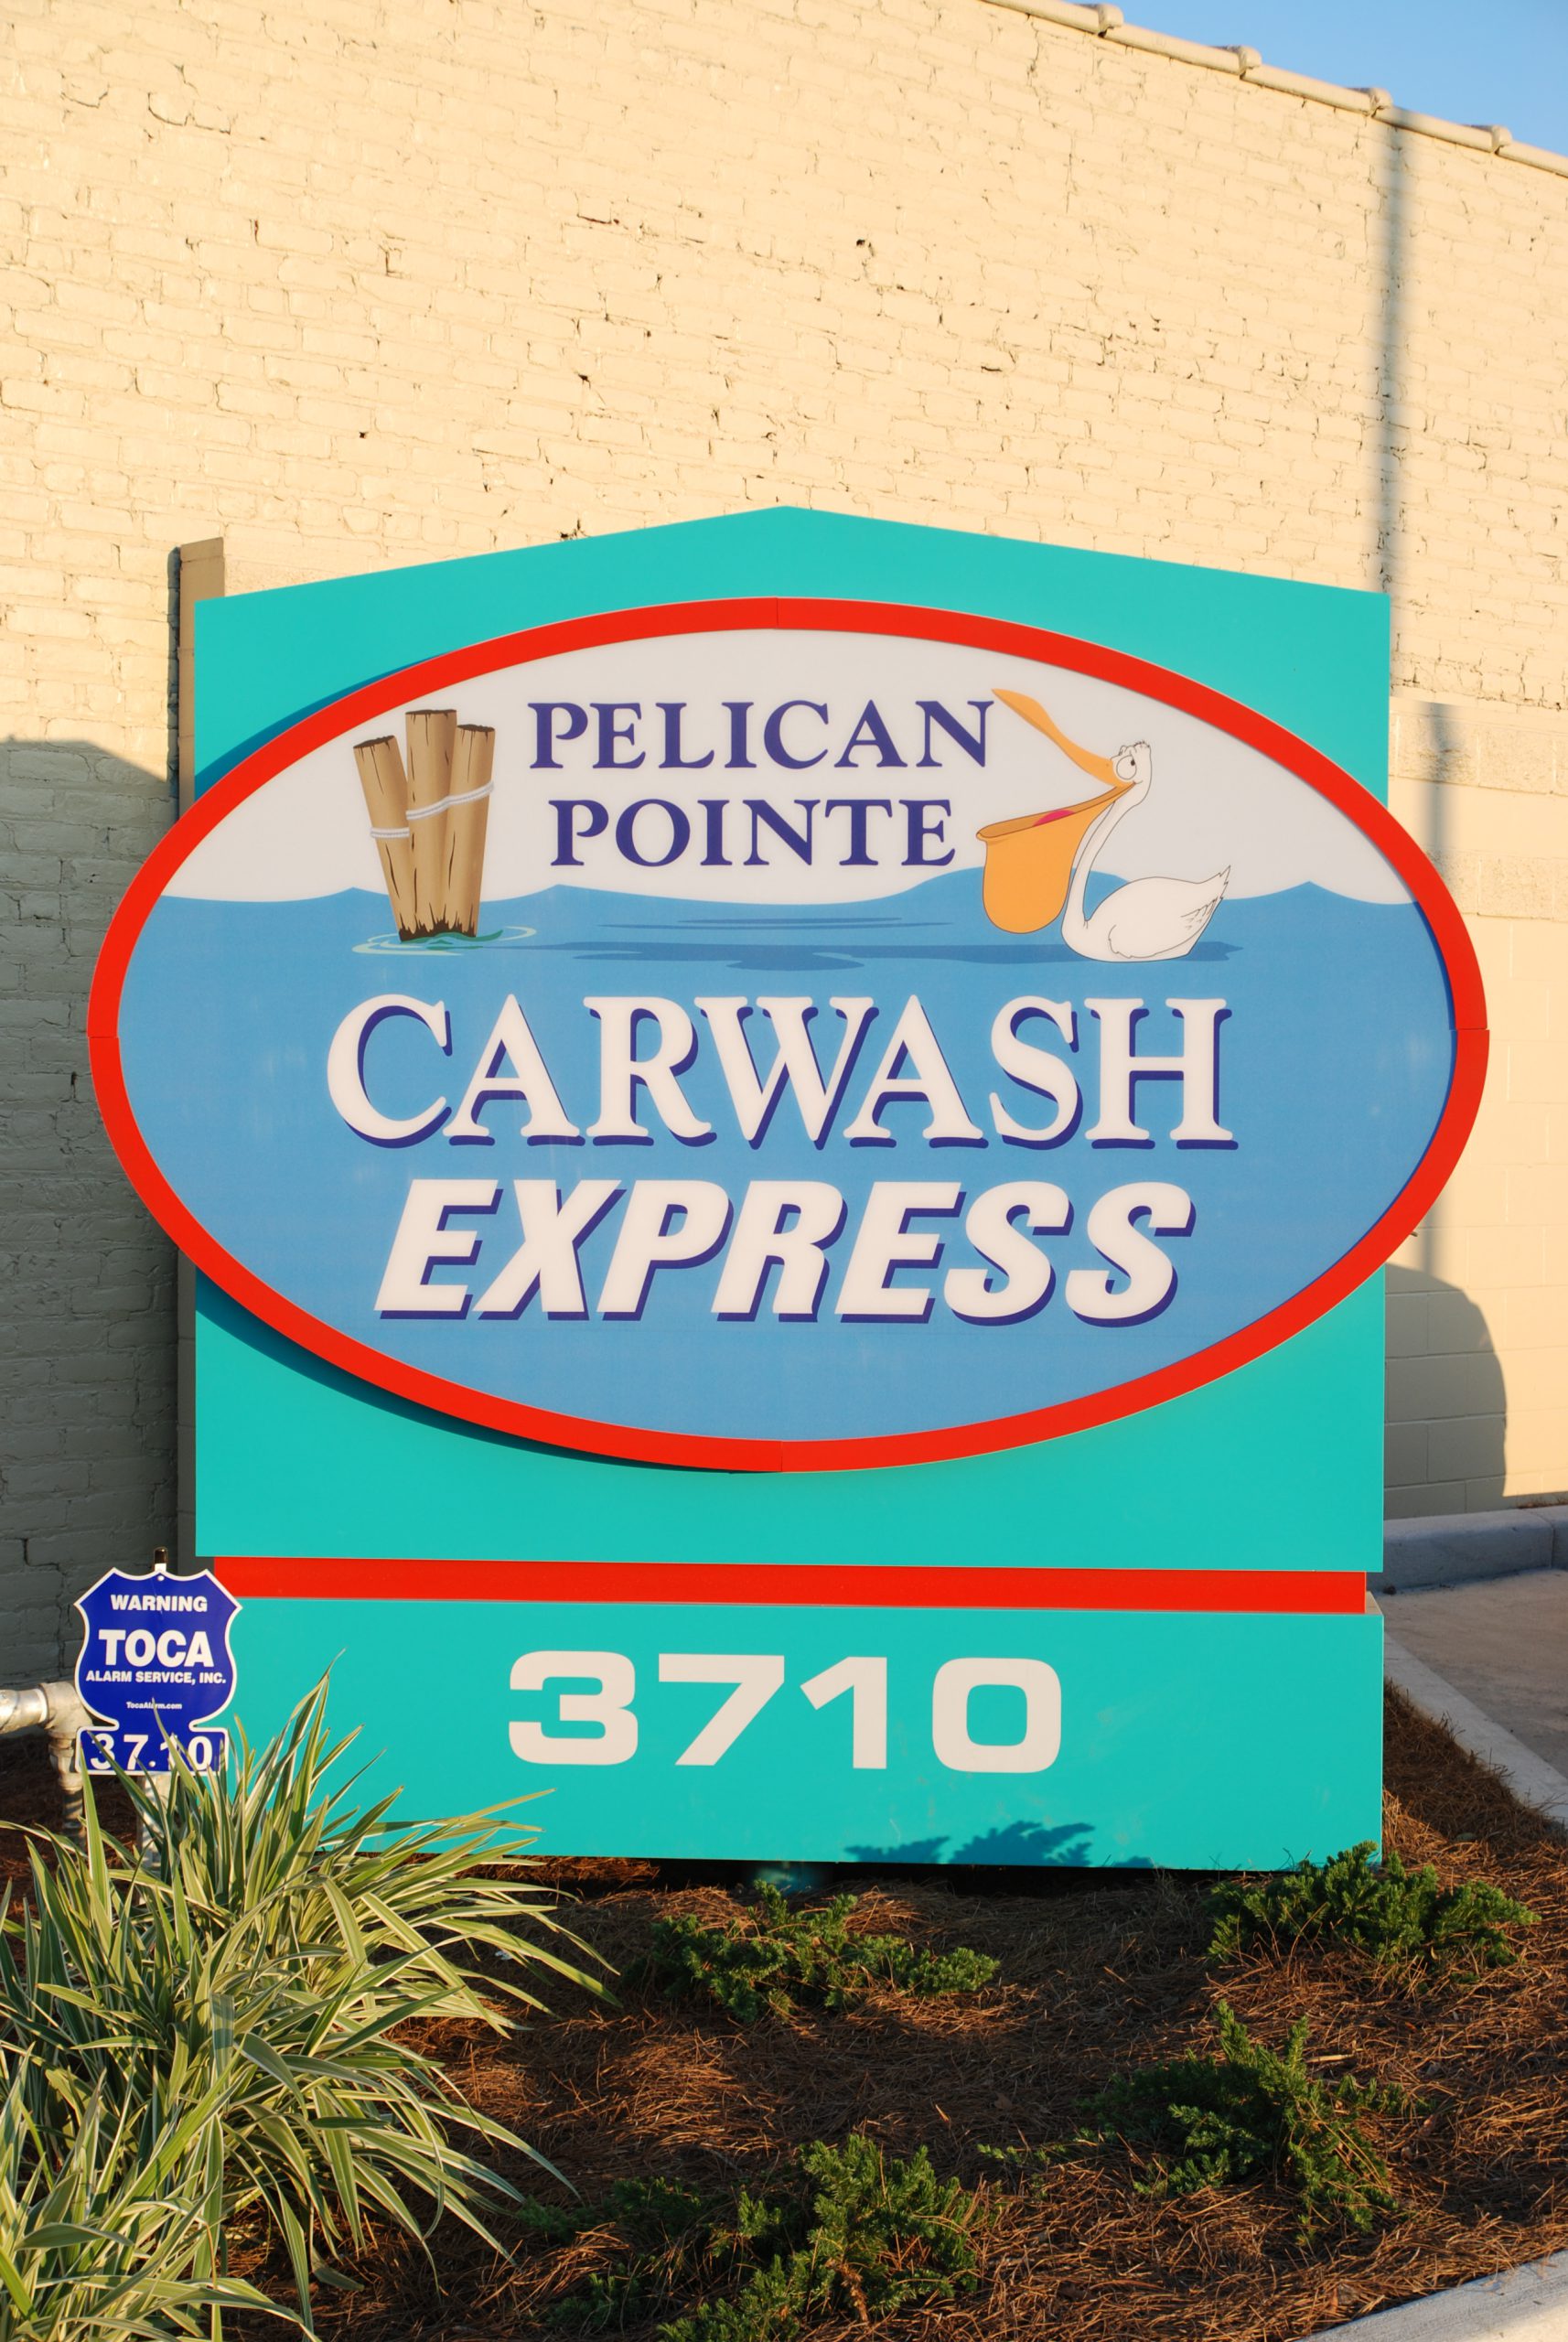 Pelican Pointe Car Wash